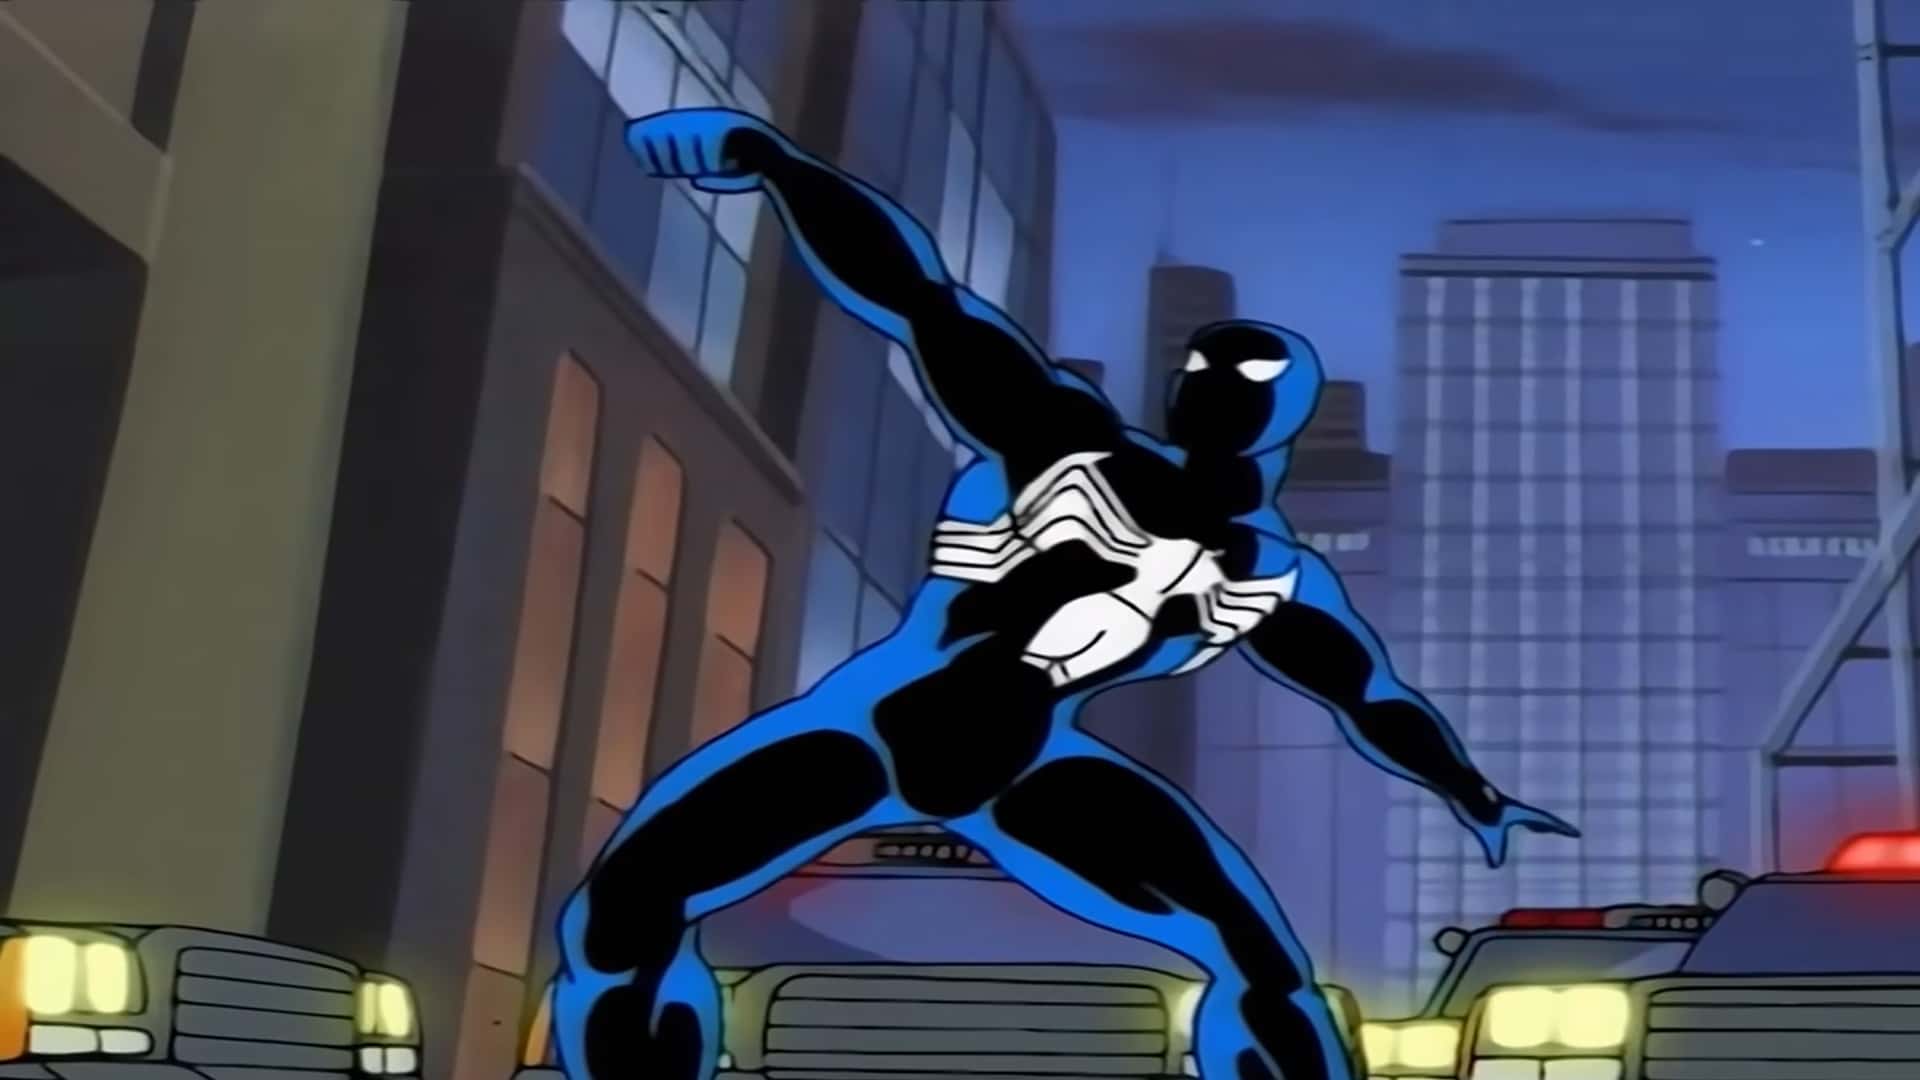 Spider-Man, la serie animada de los 90 adelantada a su tiempo